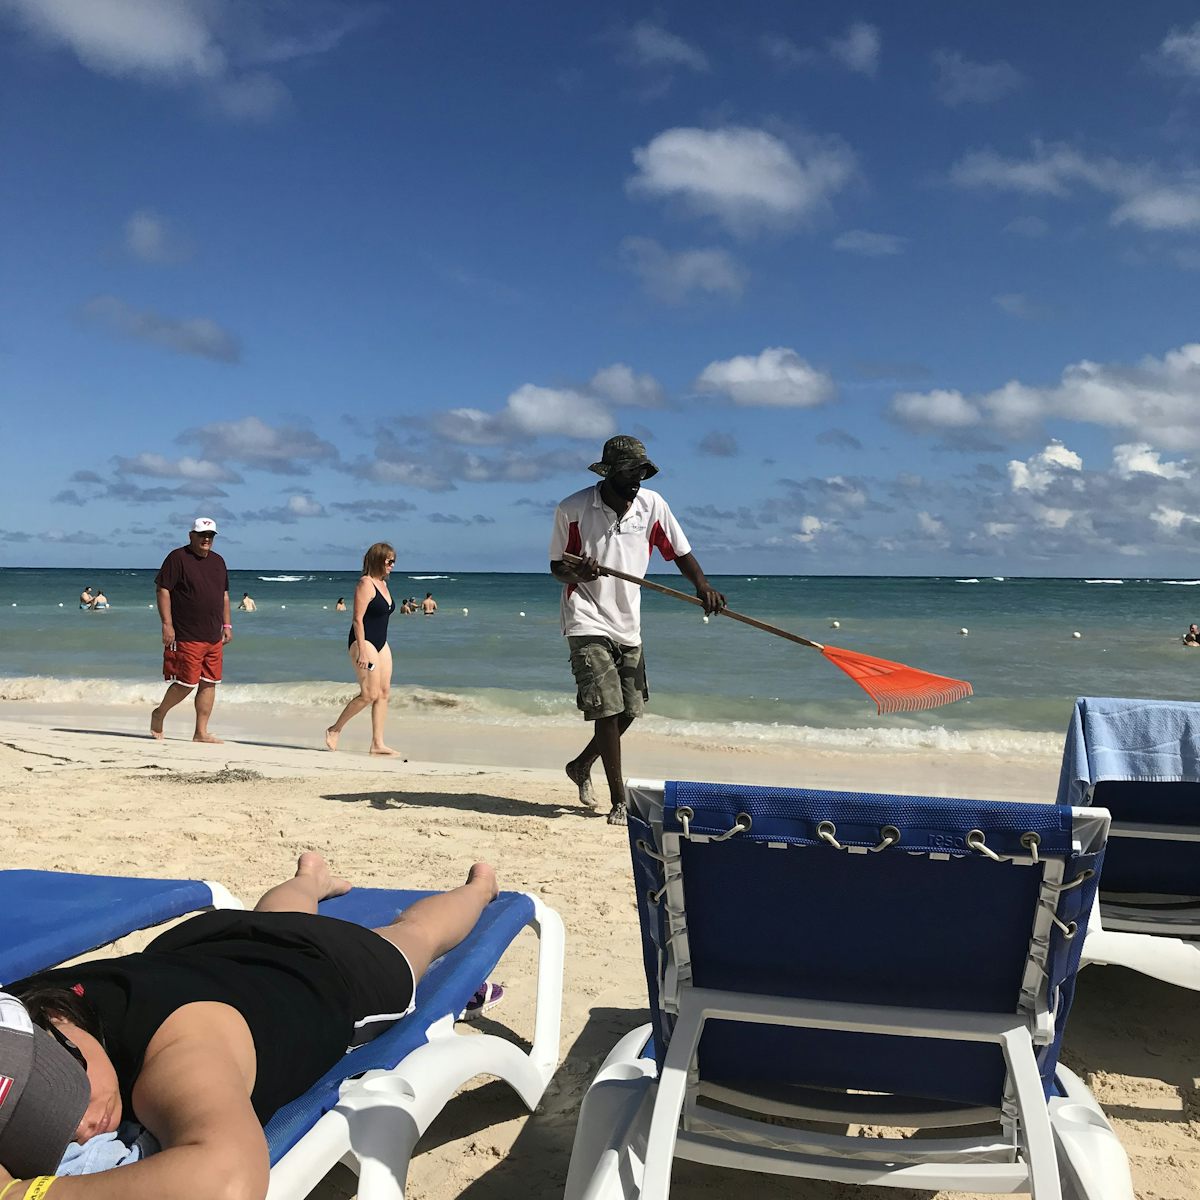 Jamaica mon- raking the beach!